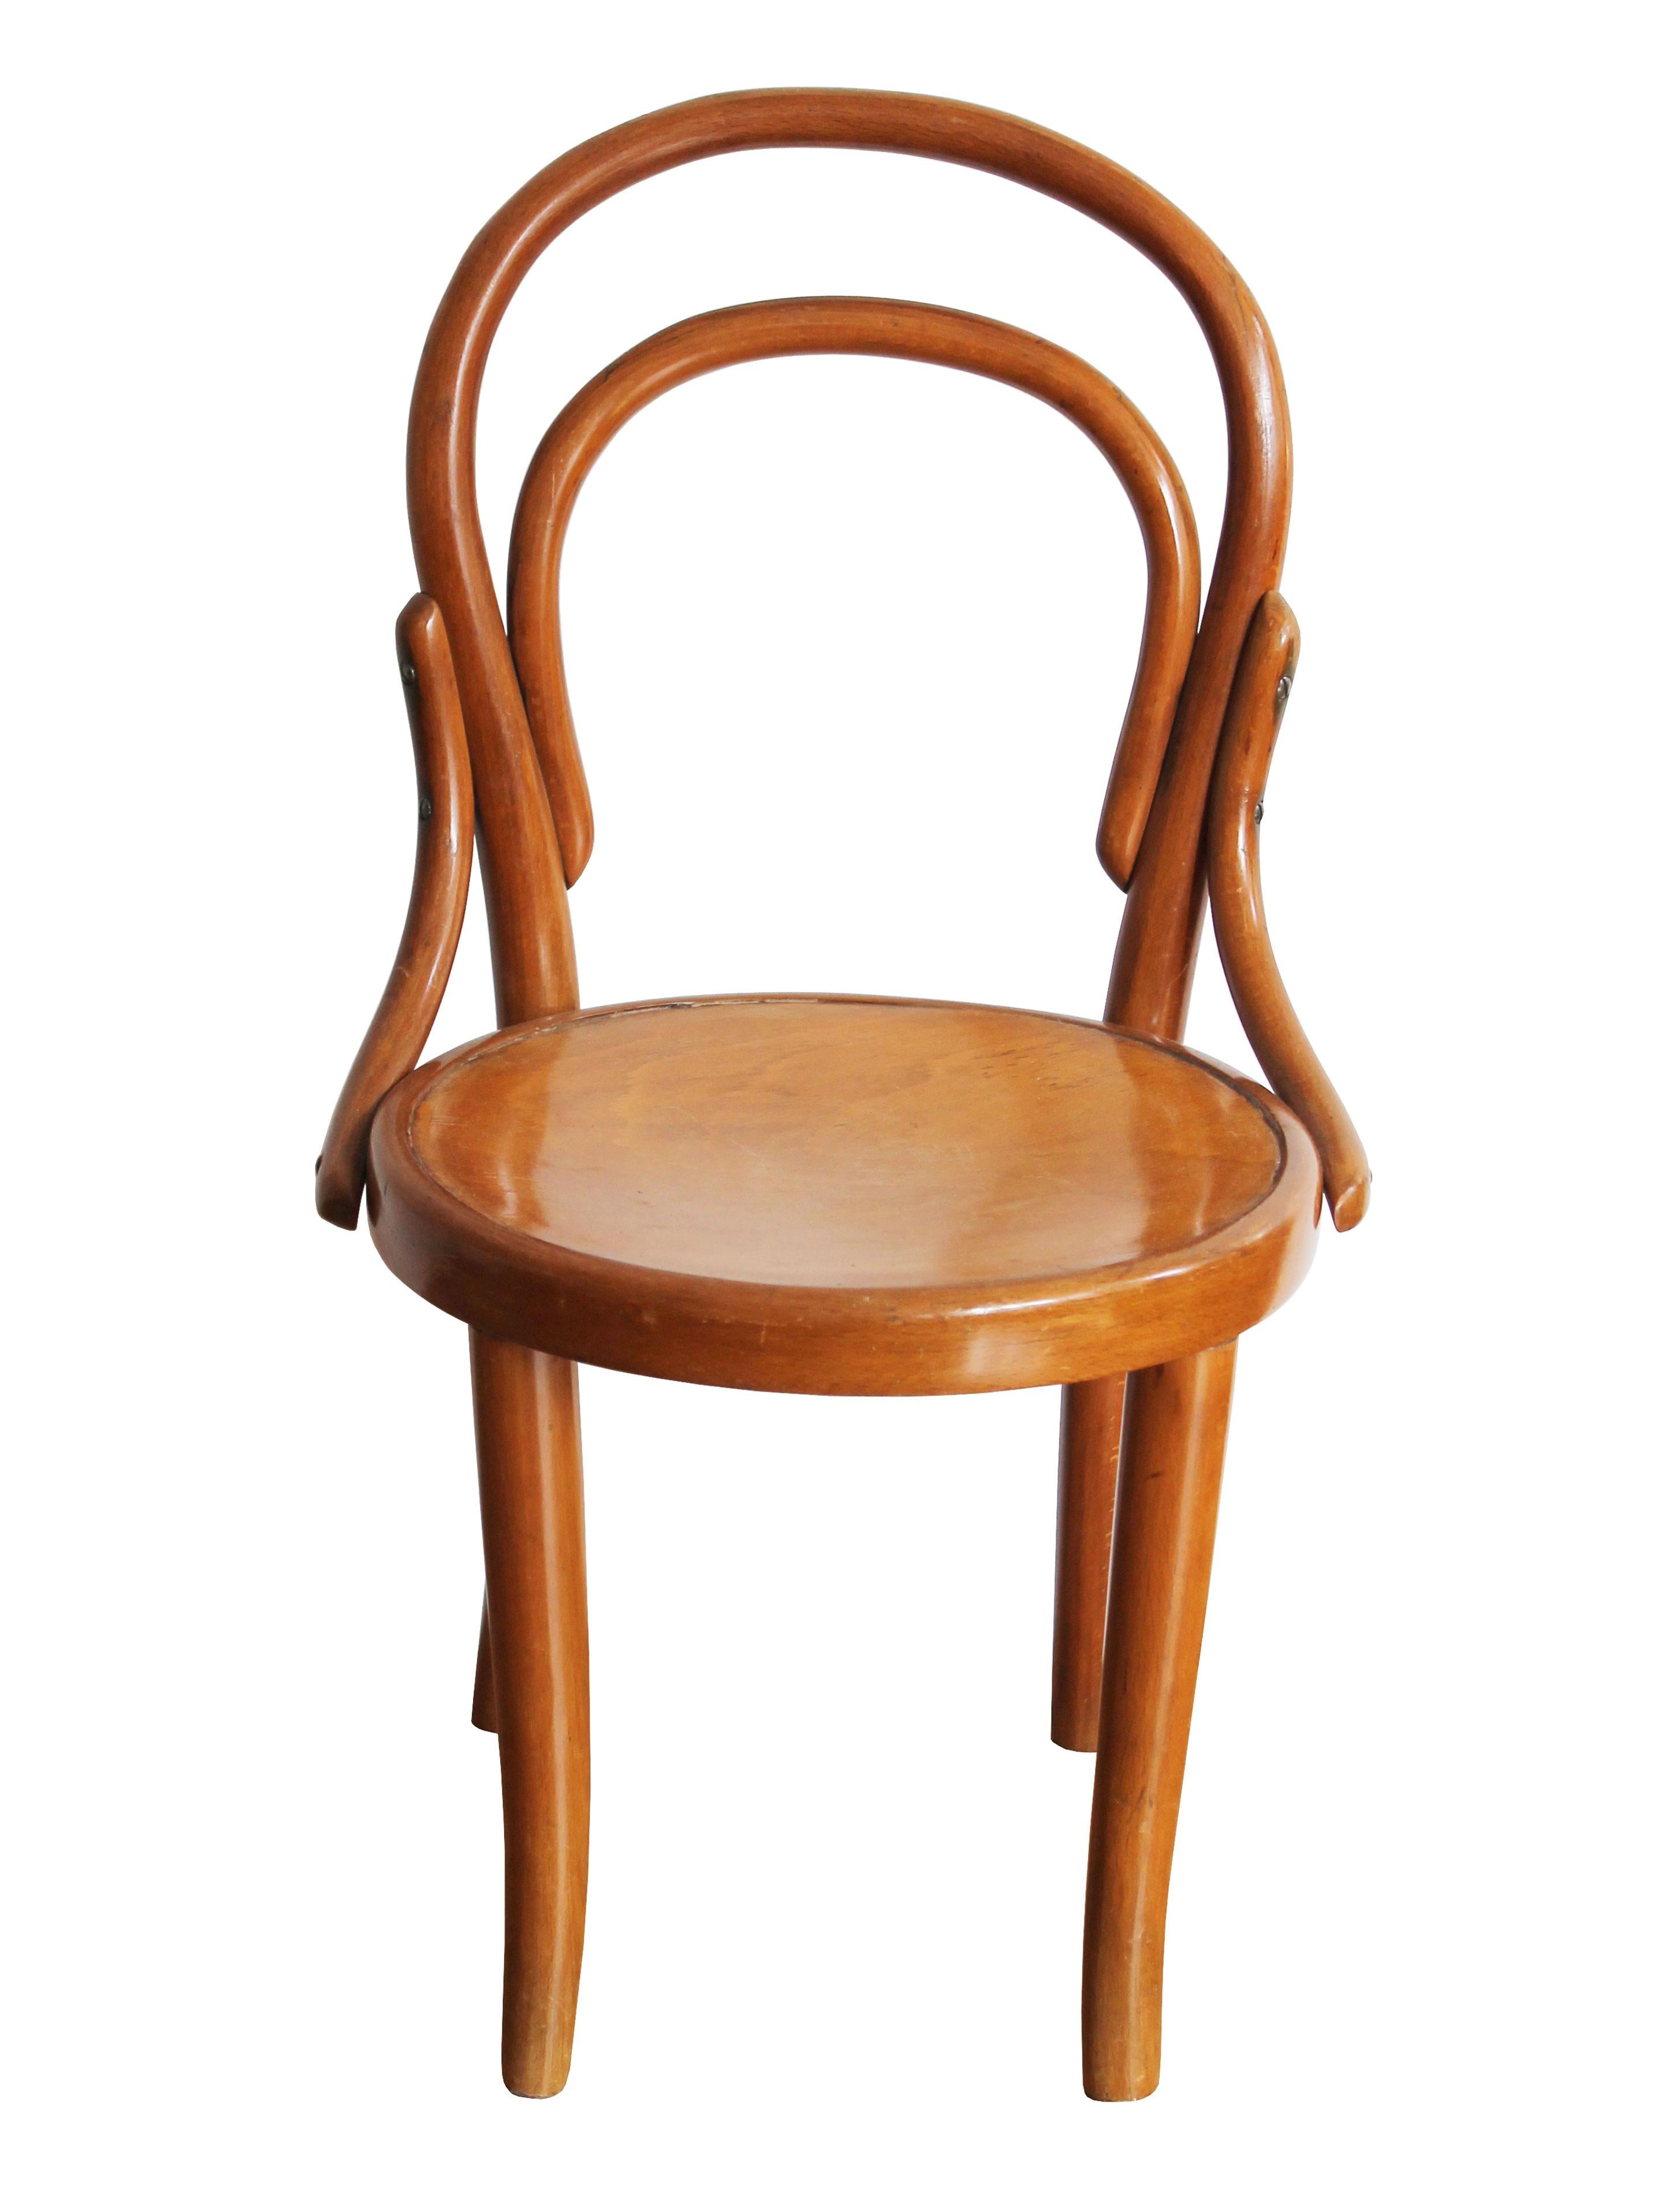 Une authentique chaise d'enfant en bois courbé fabriquée au début du XXe siècle par la société Thonet Furniture - et connue sous le nom de Chair Model Number 1. Thonet a une grande tradition de production de divers meubles pour enfants, que l'on